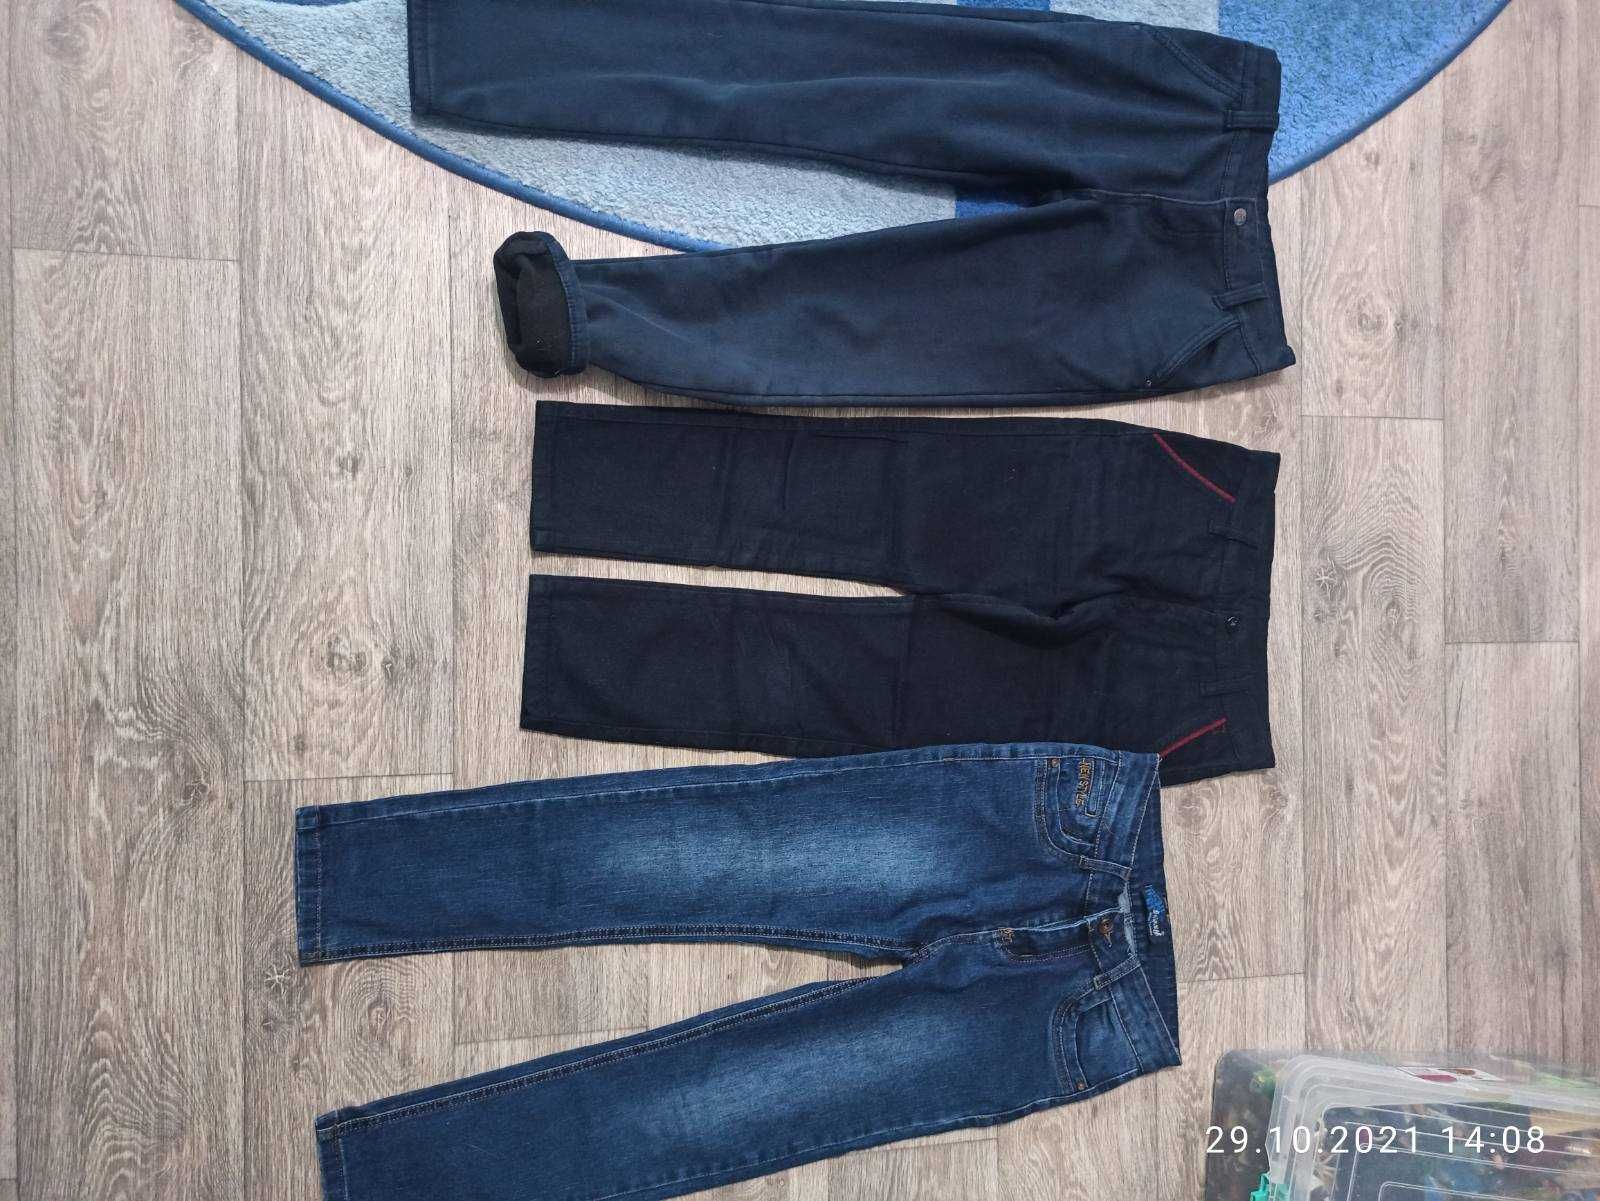 Брюки, штаны, джинсы на мальчика 6-8 лет